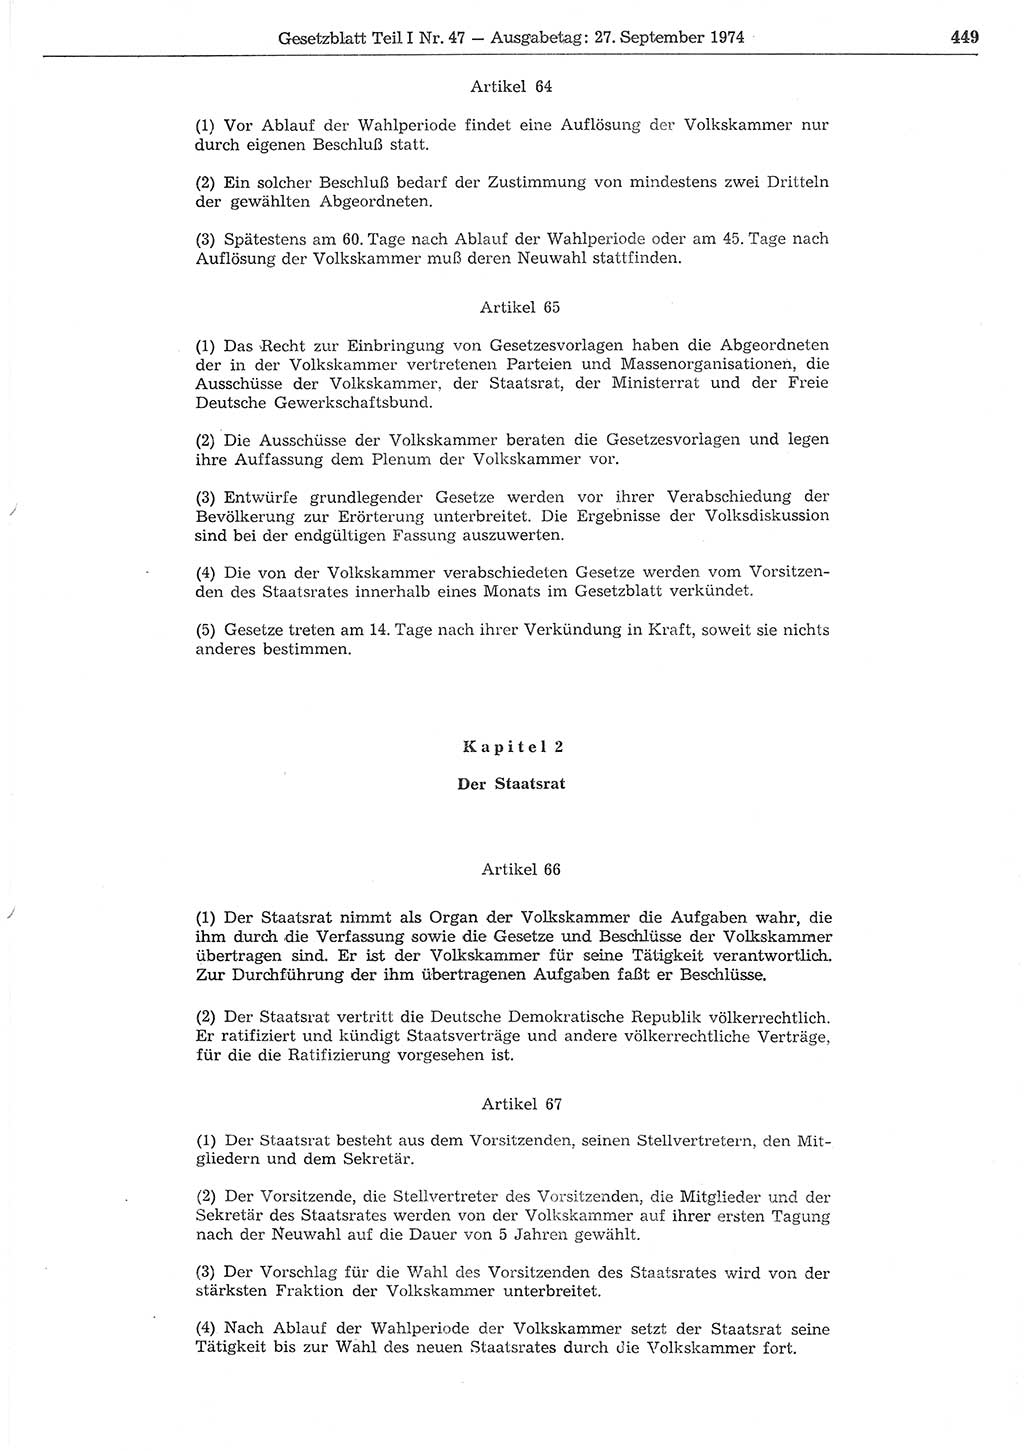 Gesetzblatt (GBl.) der Deutschen Demokratischen Republik (DDR) Teil Ⅰ 1974, Seite 449 (GBl. DDR Ⅰ 1974, S. 449)